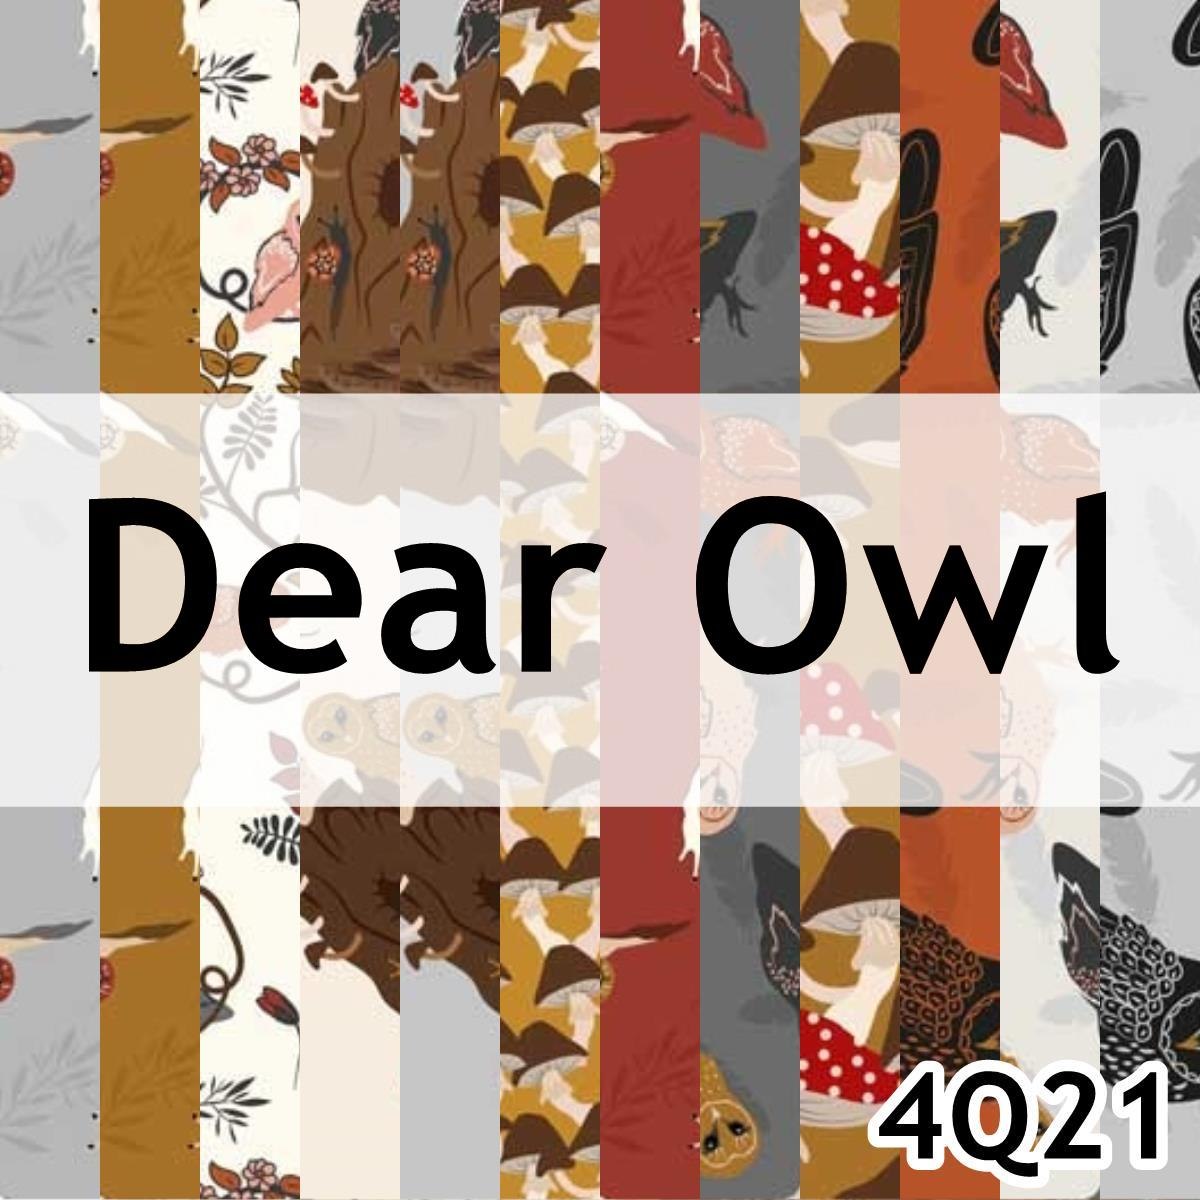 Dear Owl